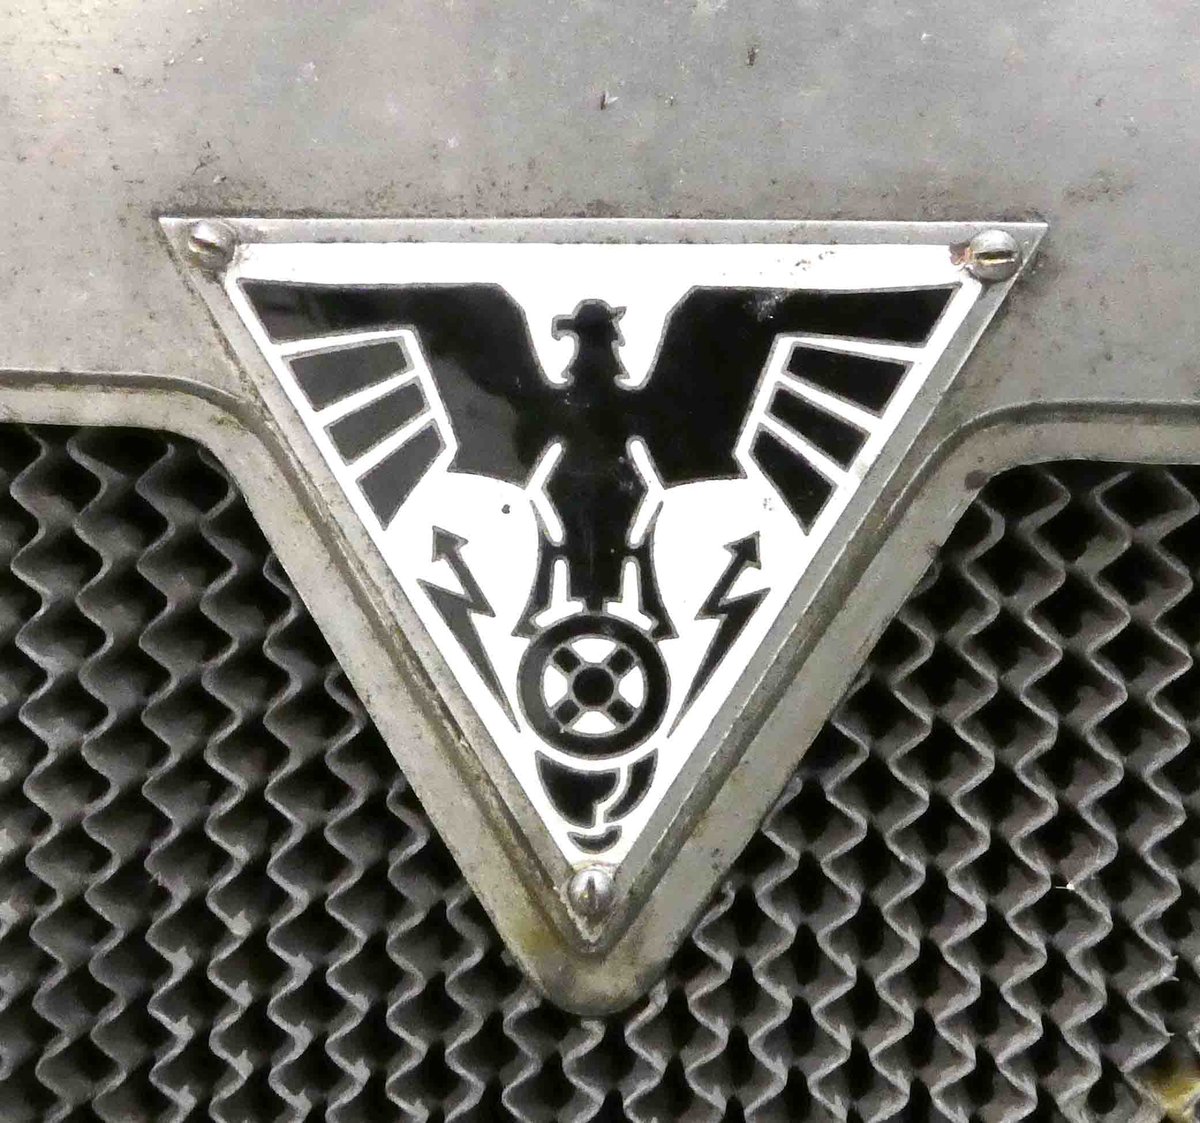 =Logo des Adler 625, Bj. 1927, gesehen bei dem Veterama 2016 in Mannheim, Juli 2016